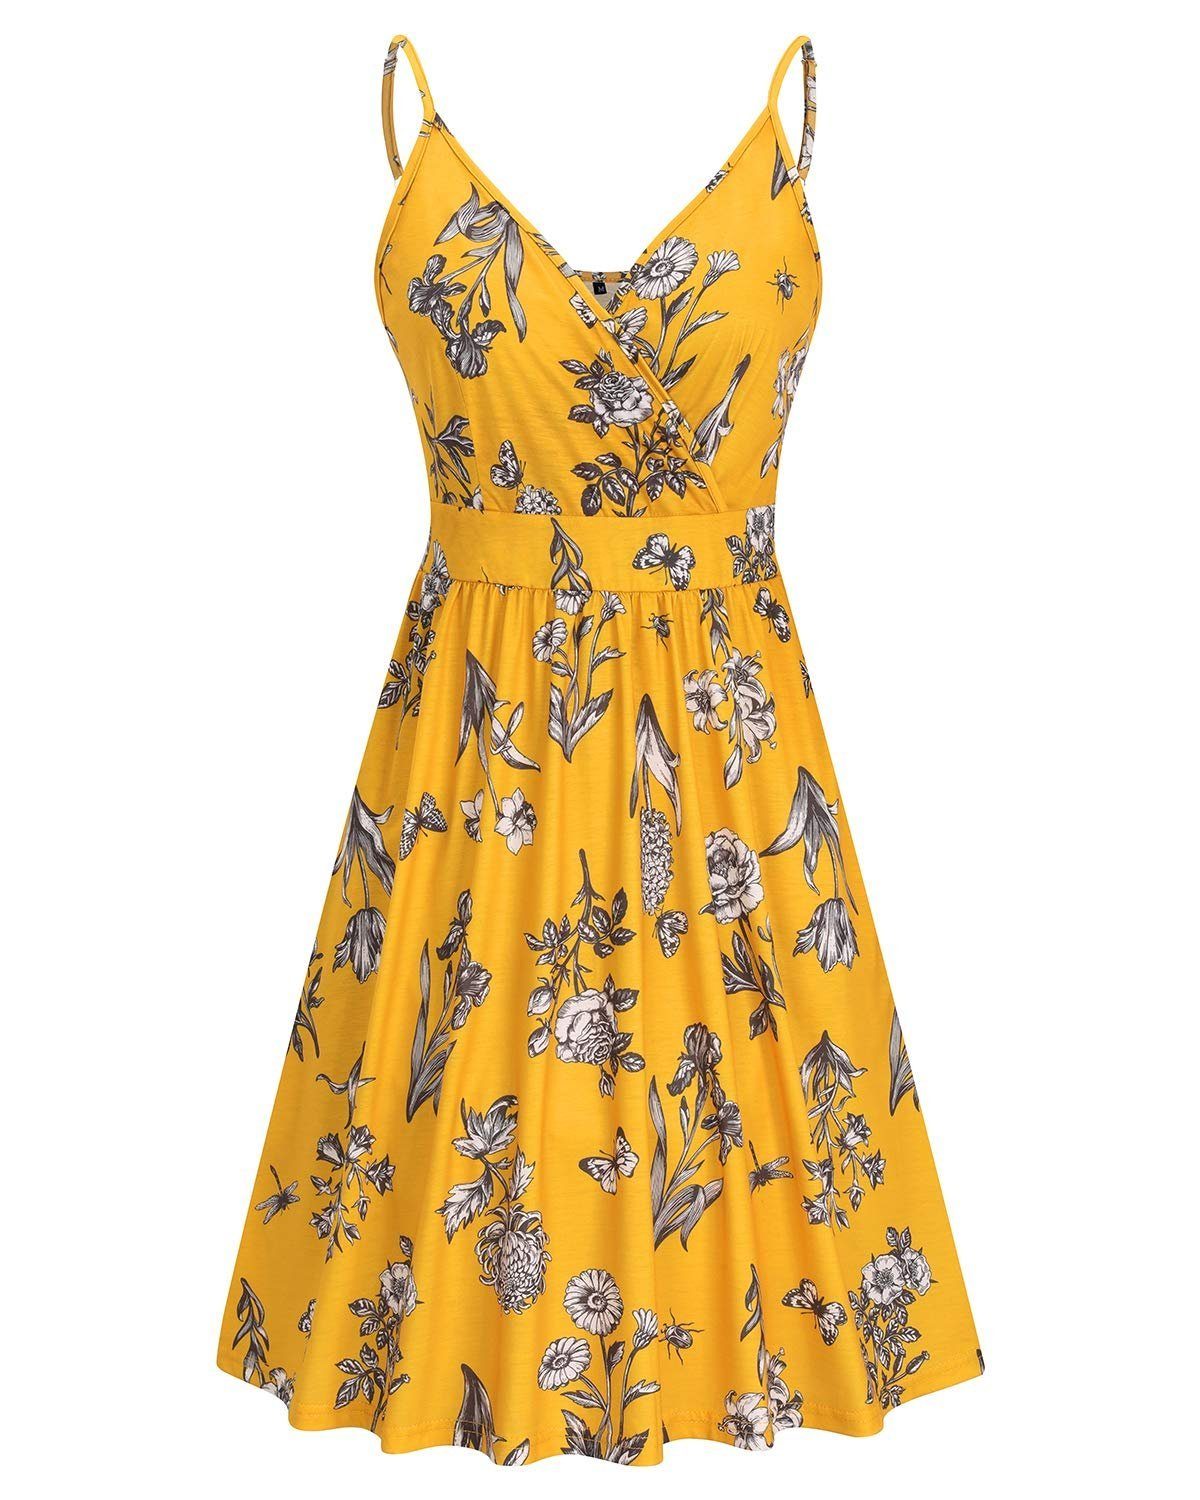 Damen OTGFNN21S234 Kleid Tank Ärmelloses Strandkleid Sommerkleid V-Ausschnitt G4Free Midilänge Kleider Blumen Sommer Vintage mit Gelb-NN234C Taschen